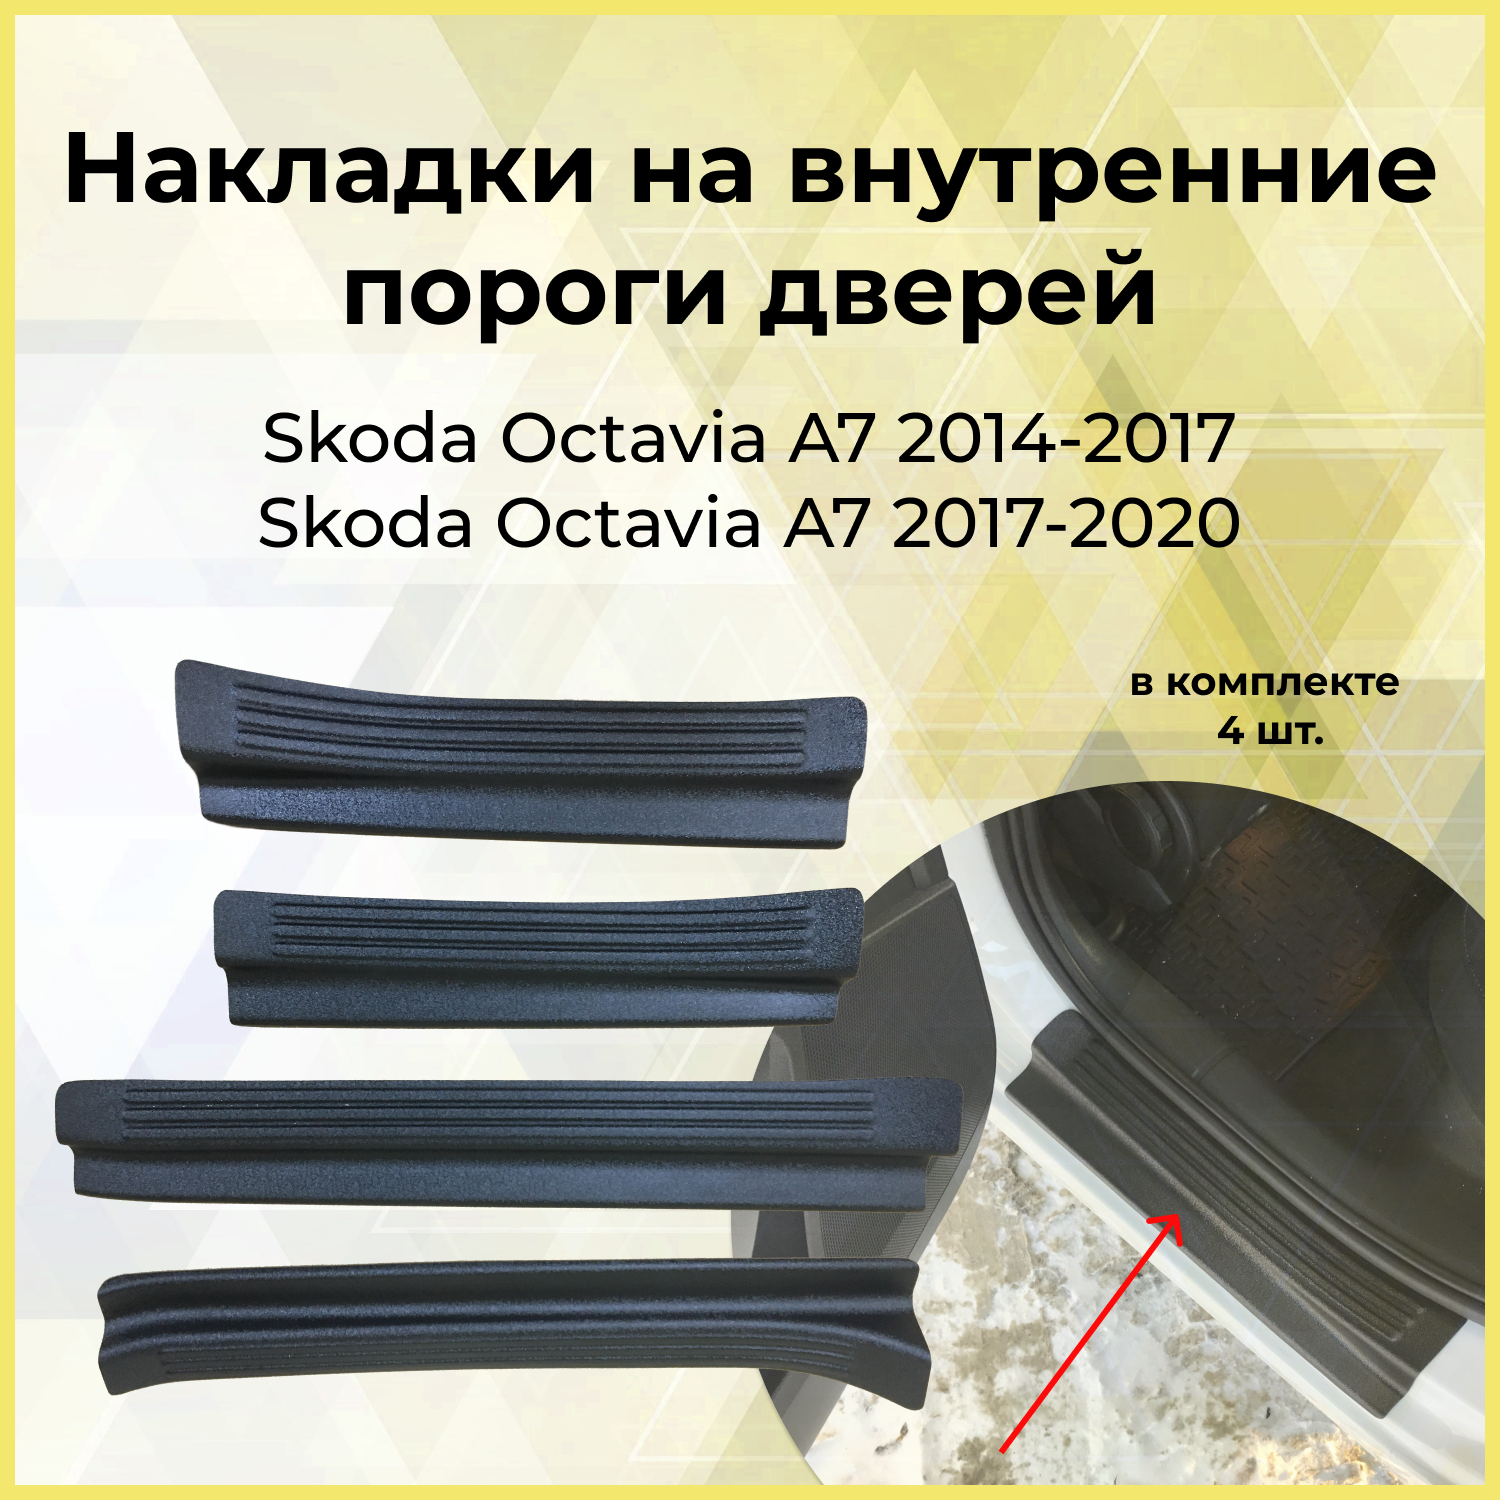 Накладки на внутренние пороги дверей Skoda Octavia A7 2017-2020